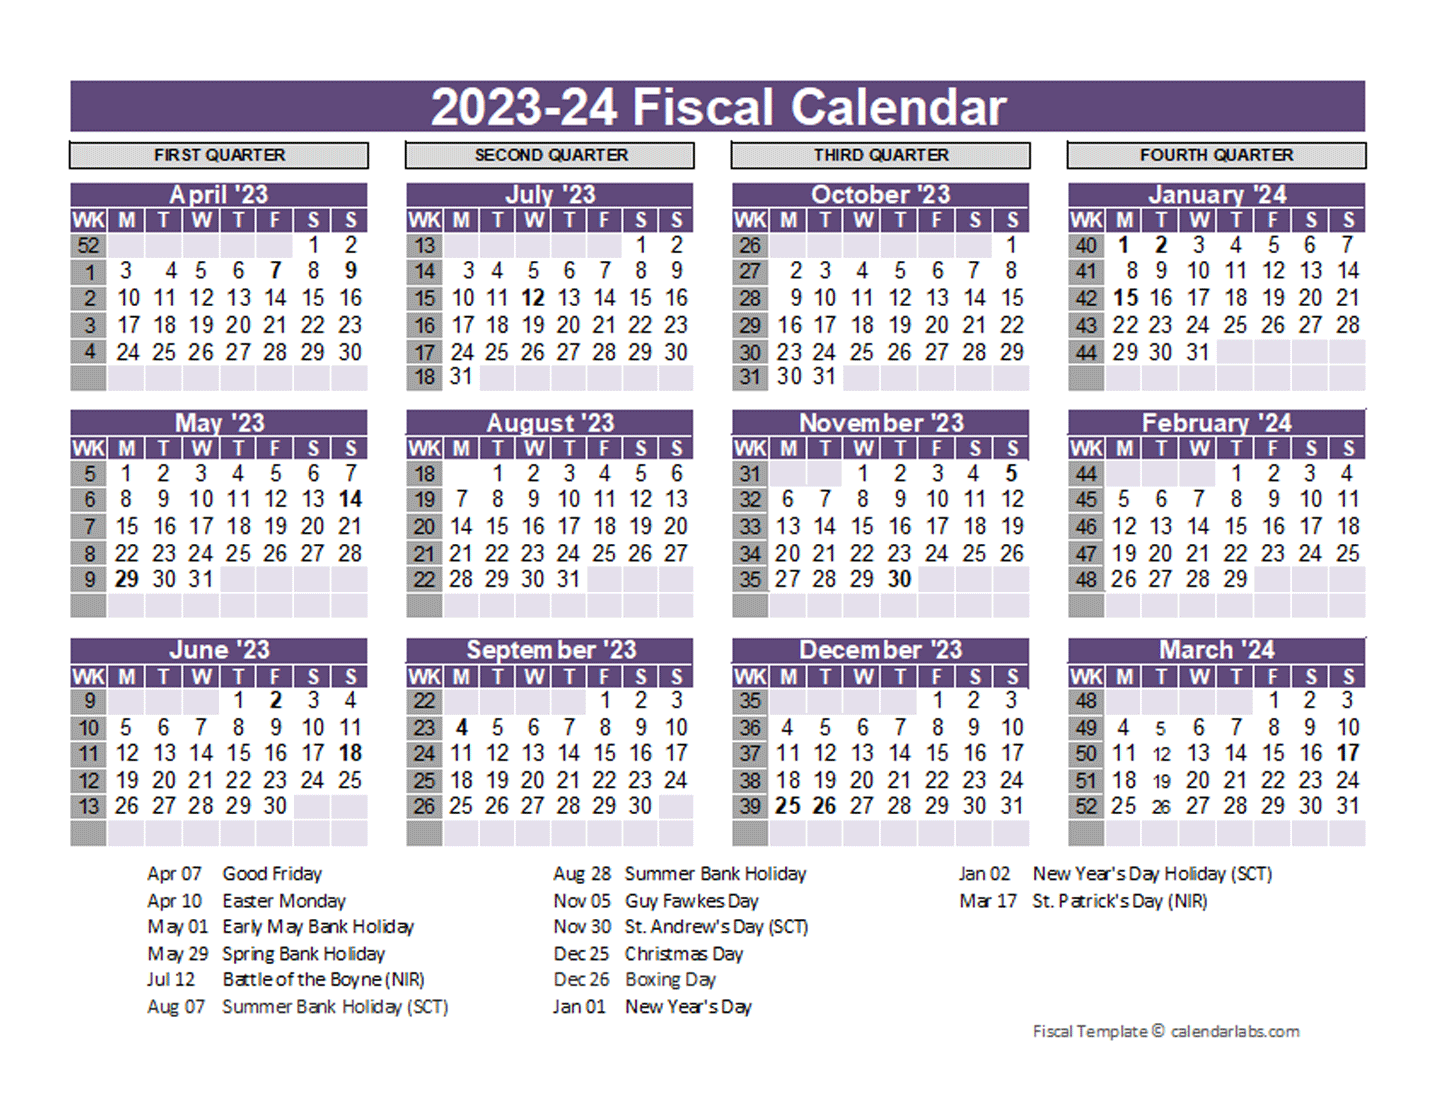 UK Fiscal Calendar Template 2023-2024